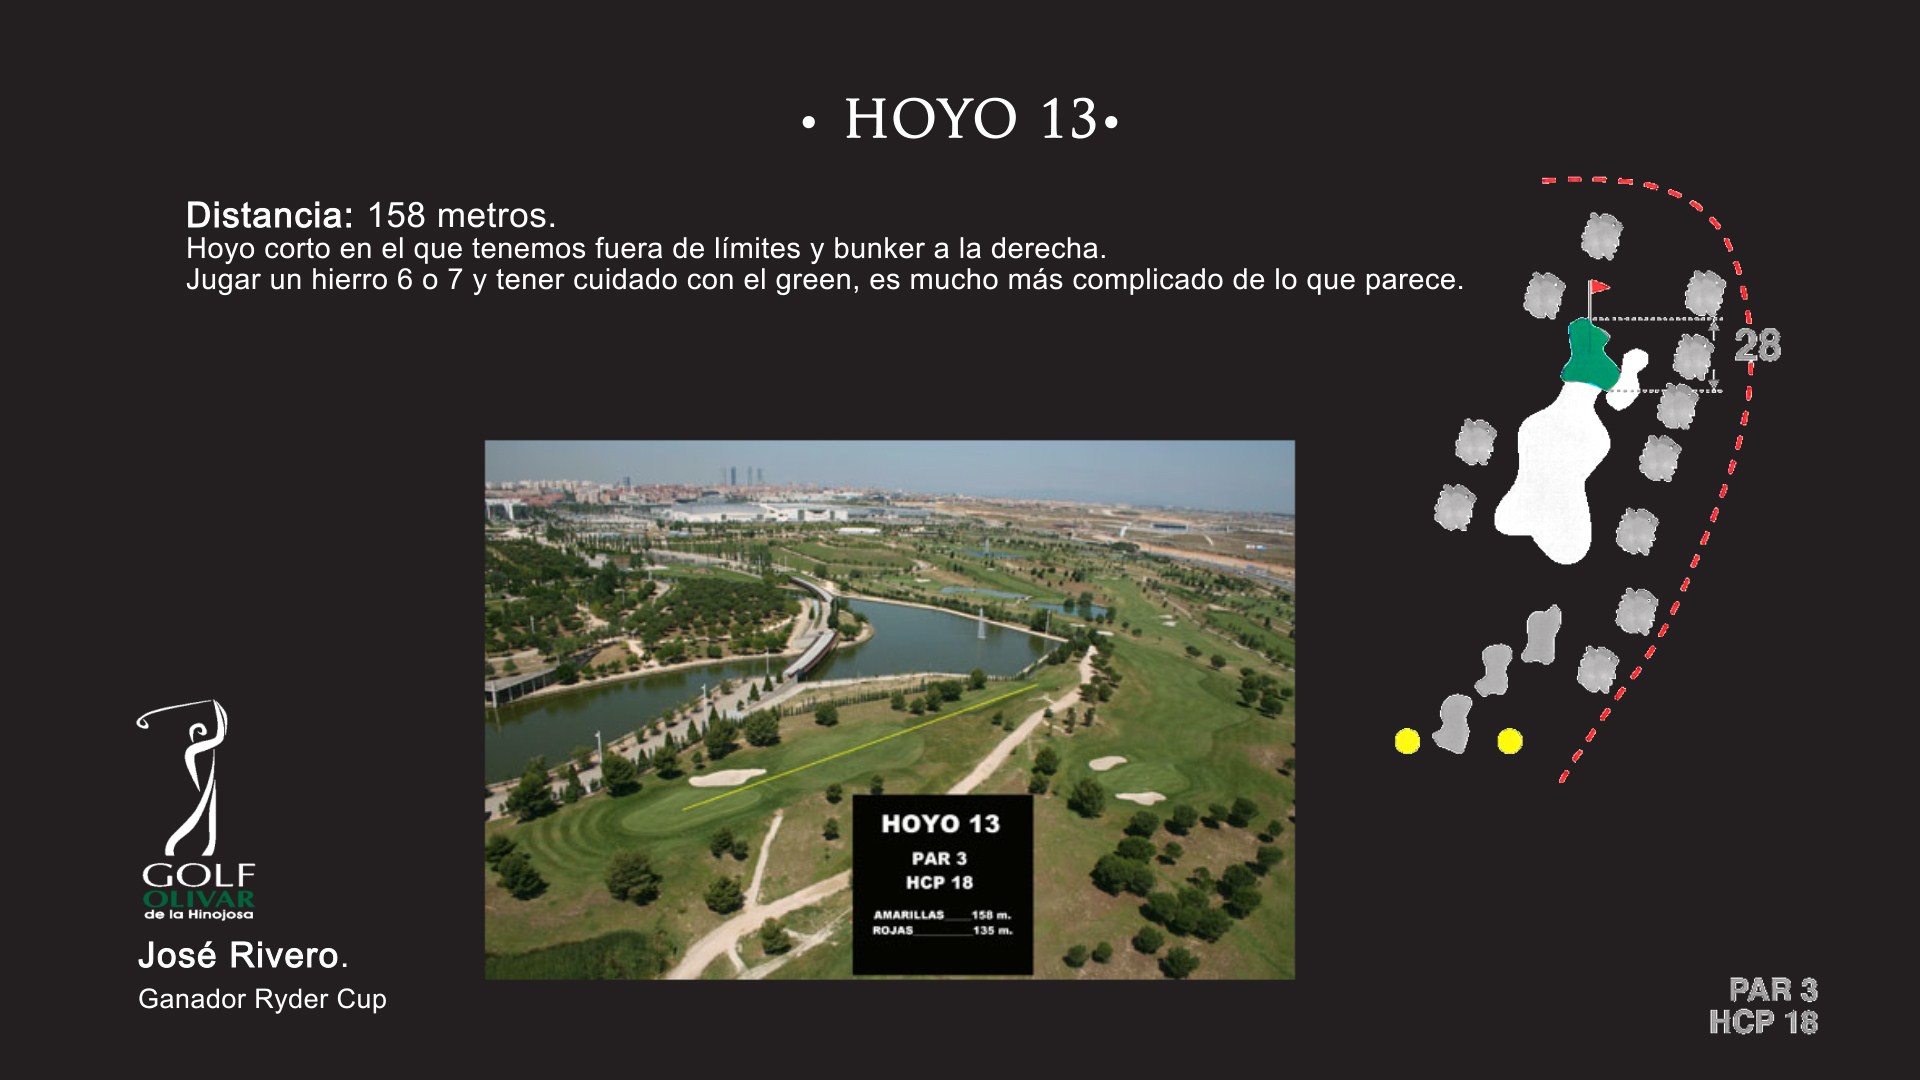 Hoyo 13 Olivar de la Hinojosa